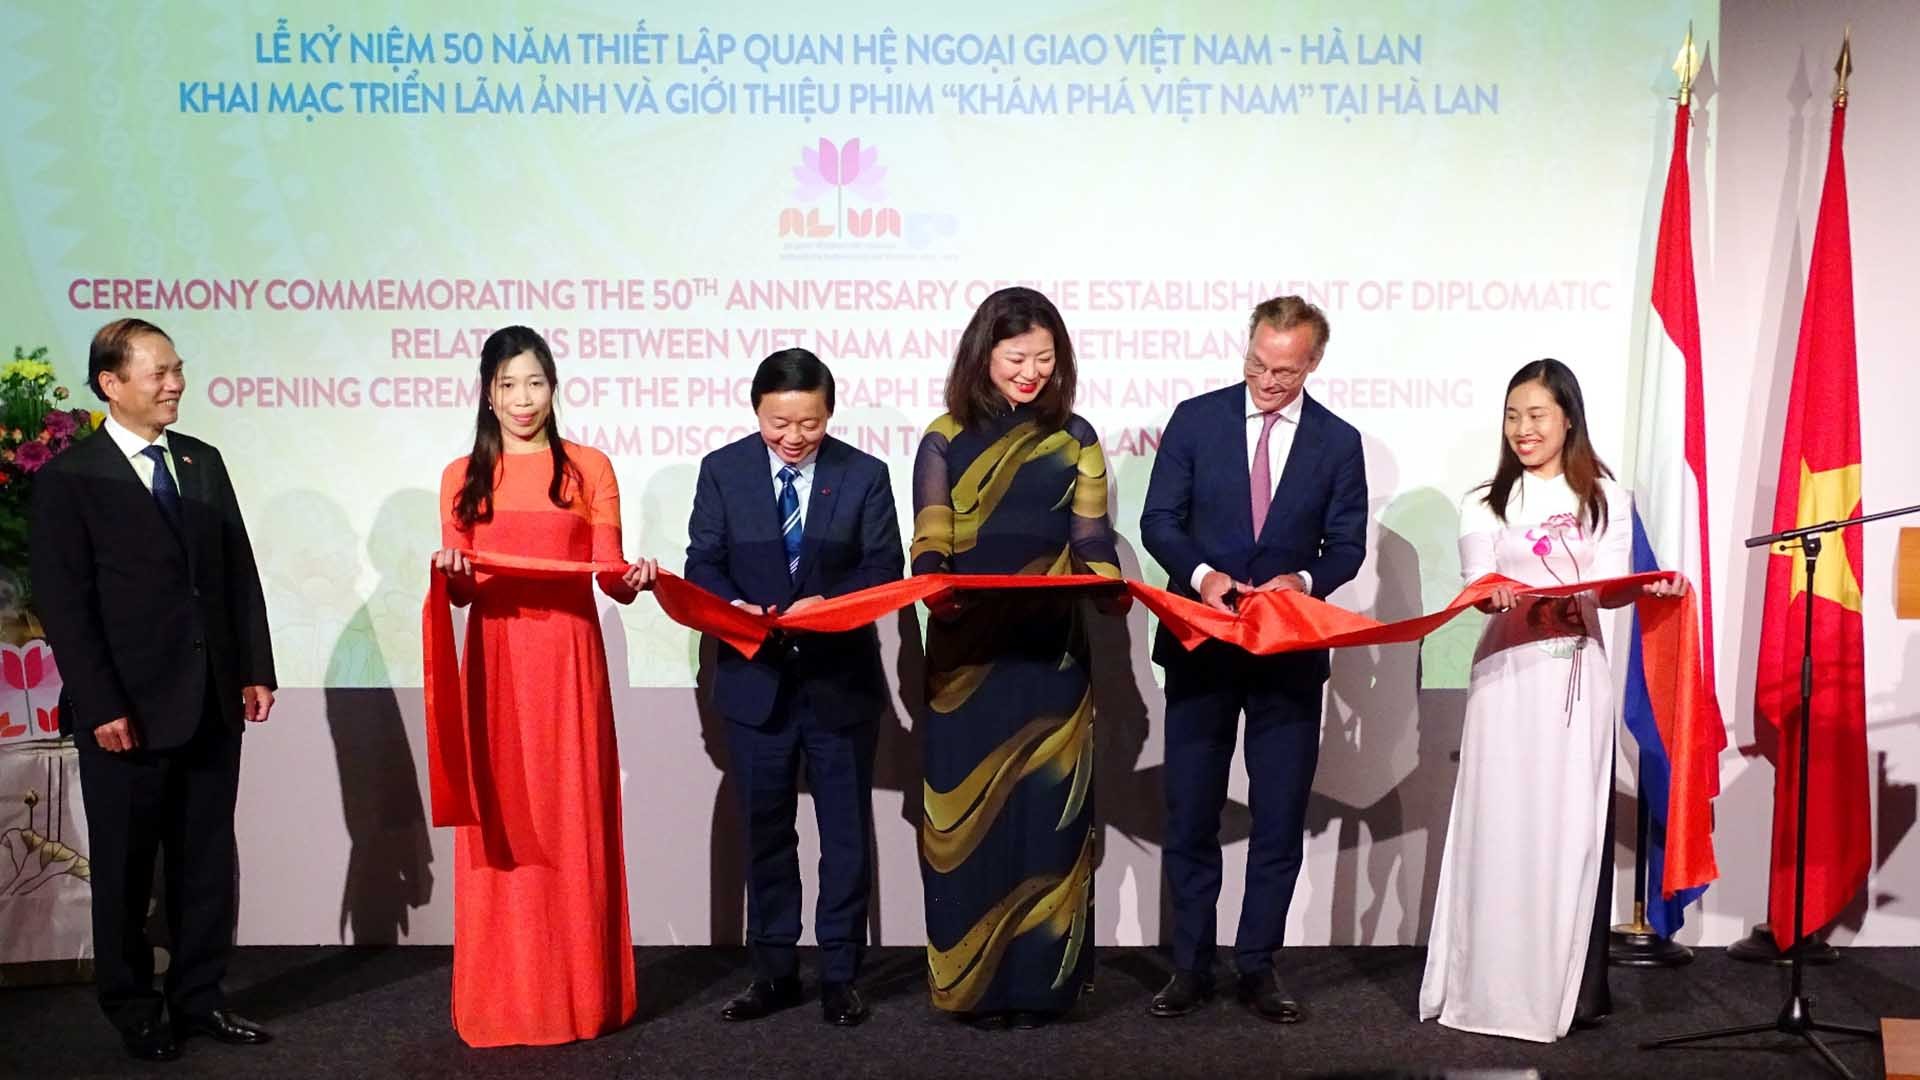 Phó Thủ tướng Trần Hồng Hà và Hoàng thân Jaime de Bourbon de Parme khai mạc chuỗi sự kiện triển lãm ảnh và giới thiệu phim tài liệu với chủ đề “Khám phá Việt Nam” tại Hà Lan.